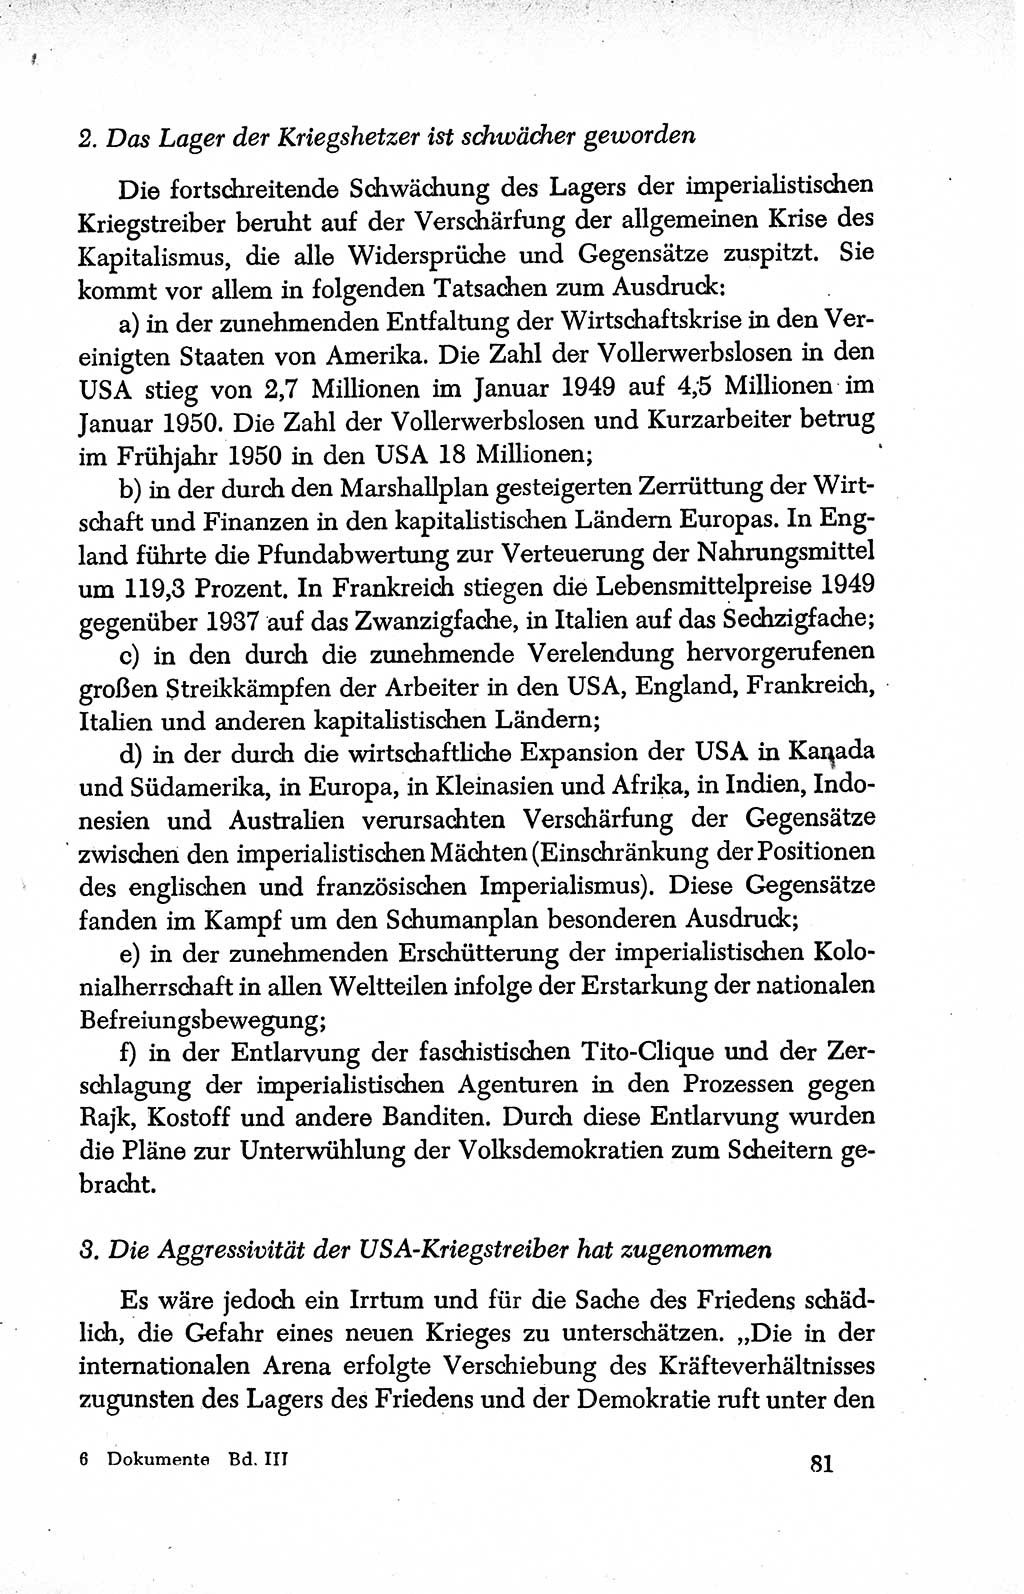 Dokumente der Sozialistischen Einheitspartei Deutschlands (SED) [Deutsche Demokratische Republik (DDR)] 1950-1952, Seite 81 (Dok. SED DDR 1950-1952, S. 81)